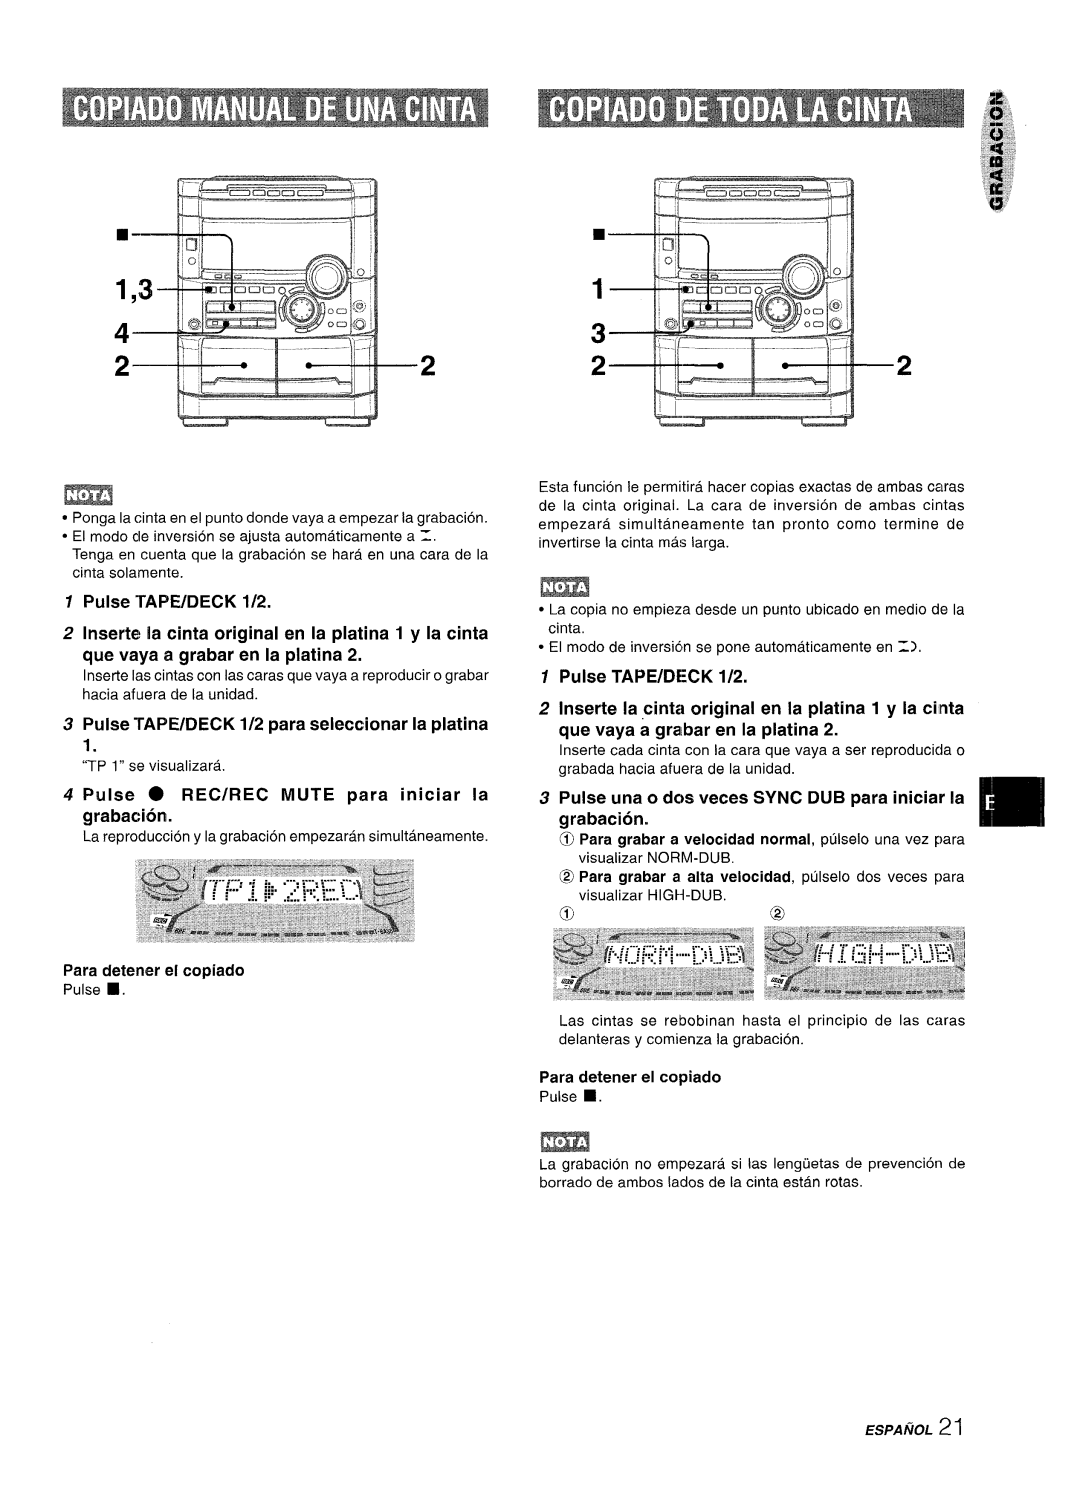 Sony NSX-A777 Pulse TAPE/DECK 1/2, Inserte la cinta original en la platina 1 y la cinta, que vaya a grabar en la platina 